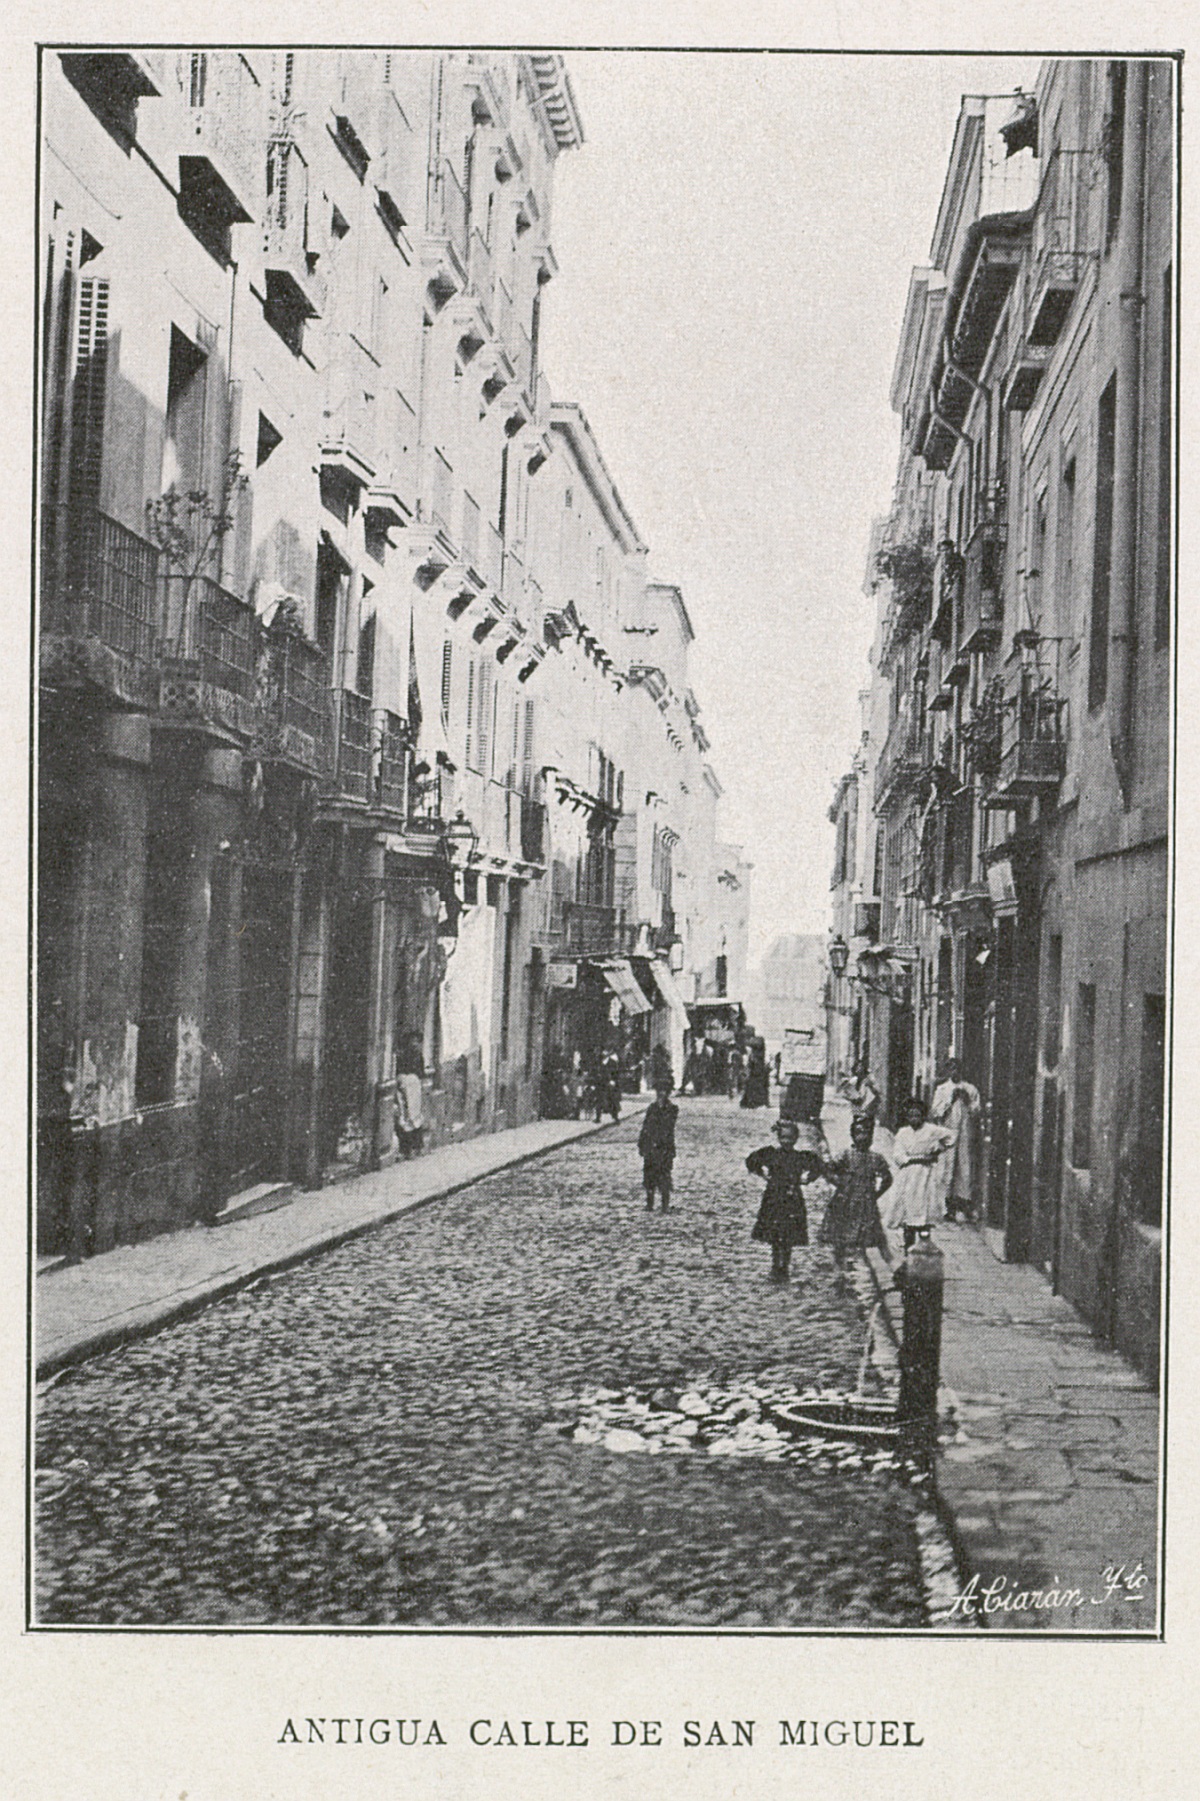 La antigua calle de San Miguel